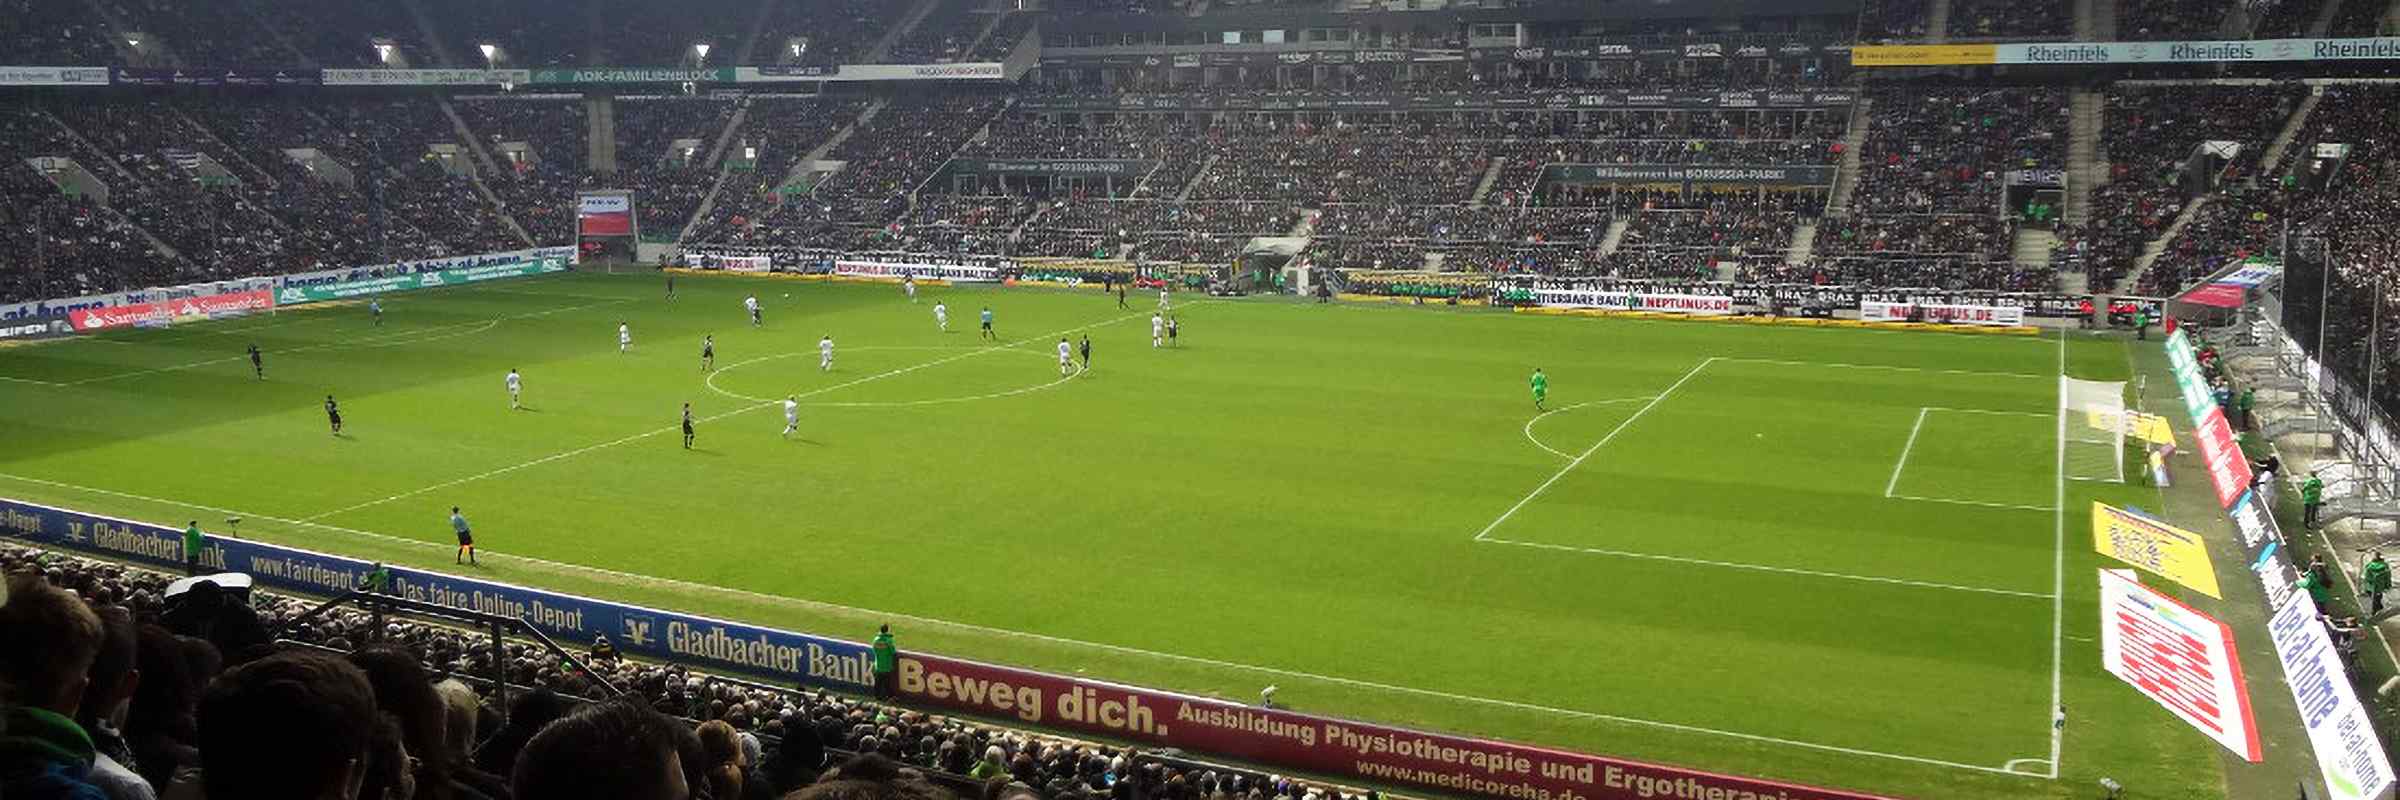 Seat-Compare.com: Borussia Park,Monchengladbach.